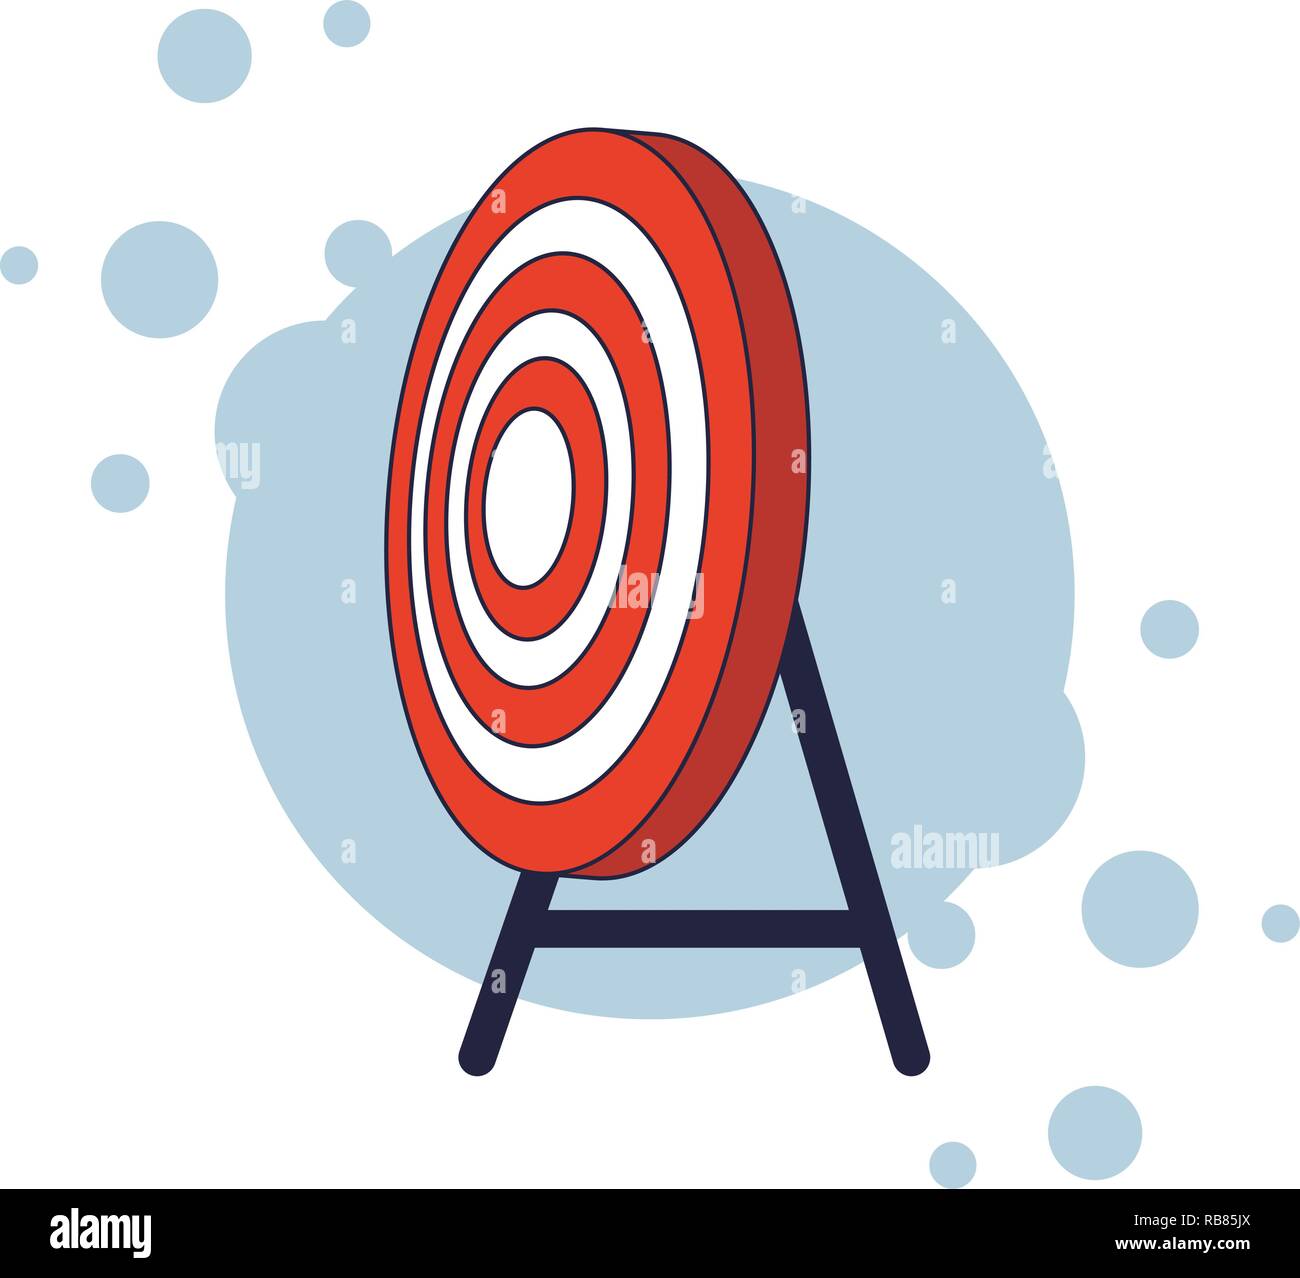 target shooting cartoon Stock Vector Image & Art - Alamy